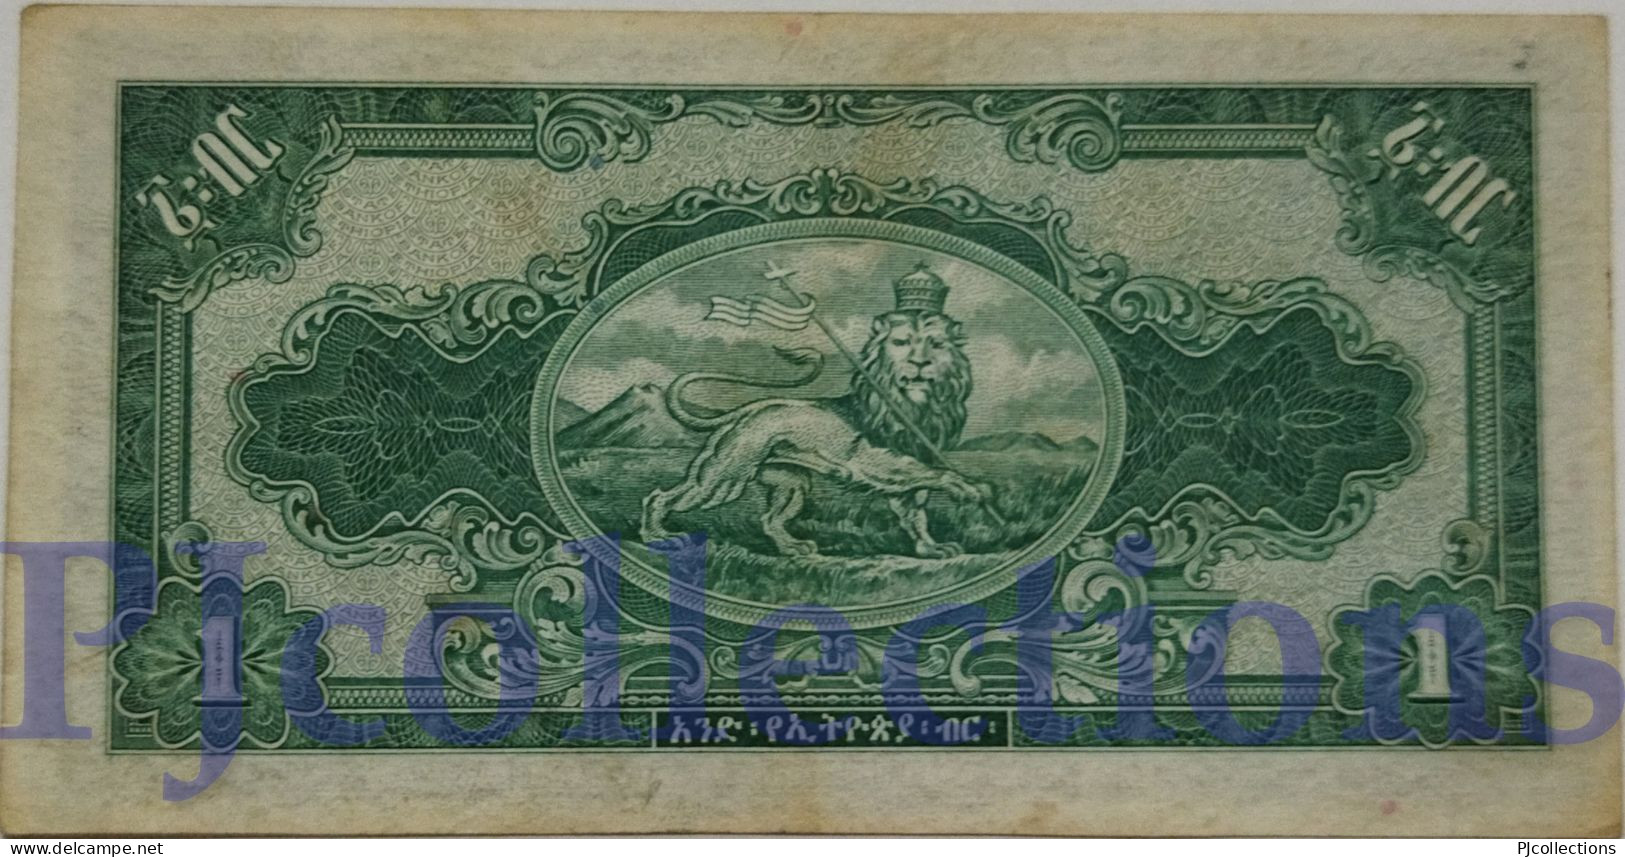 ETHIOPIA 1 DOLLAR 1945 PICK 12b AU+ W/LIGHT STAINS - Ethiopie